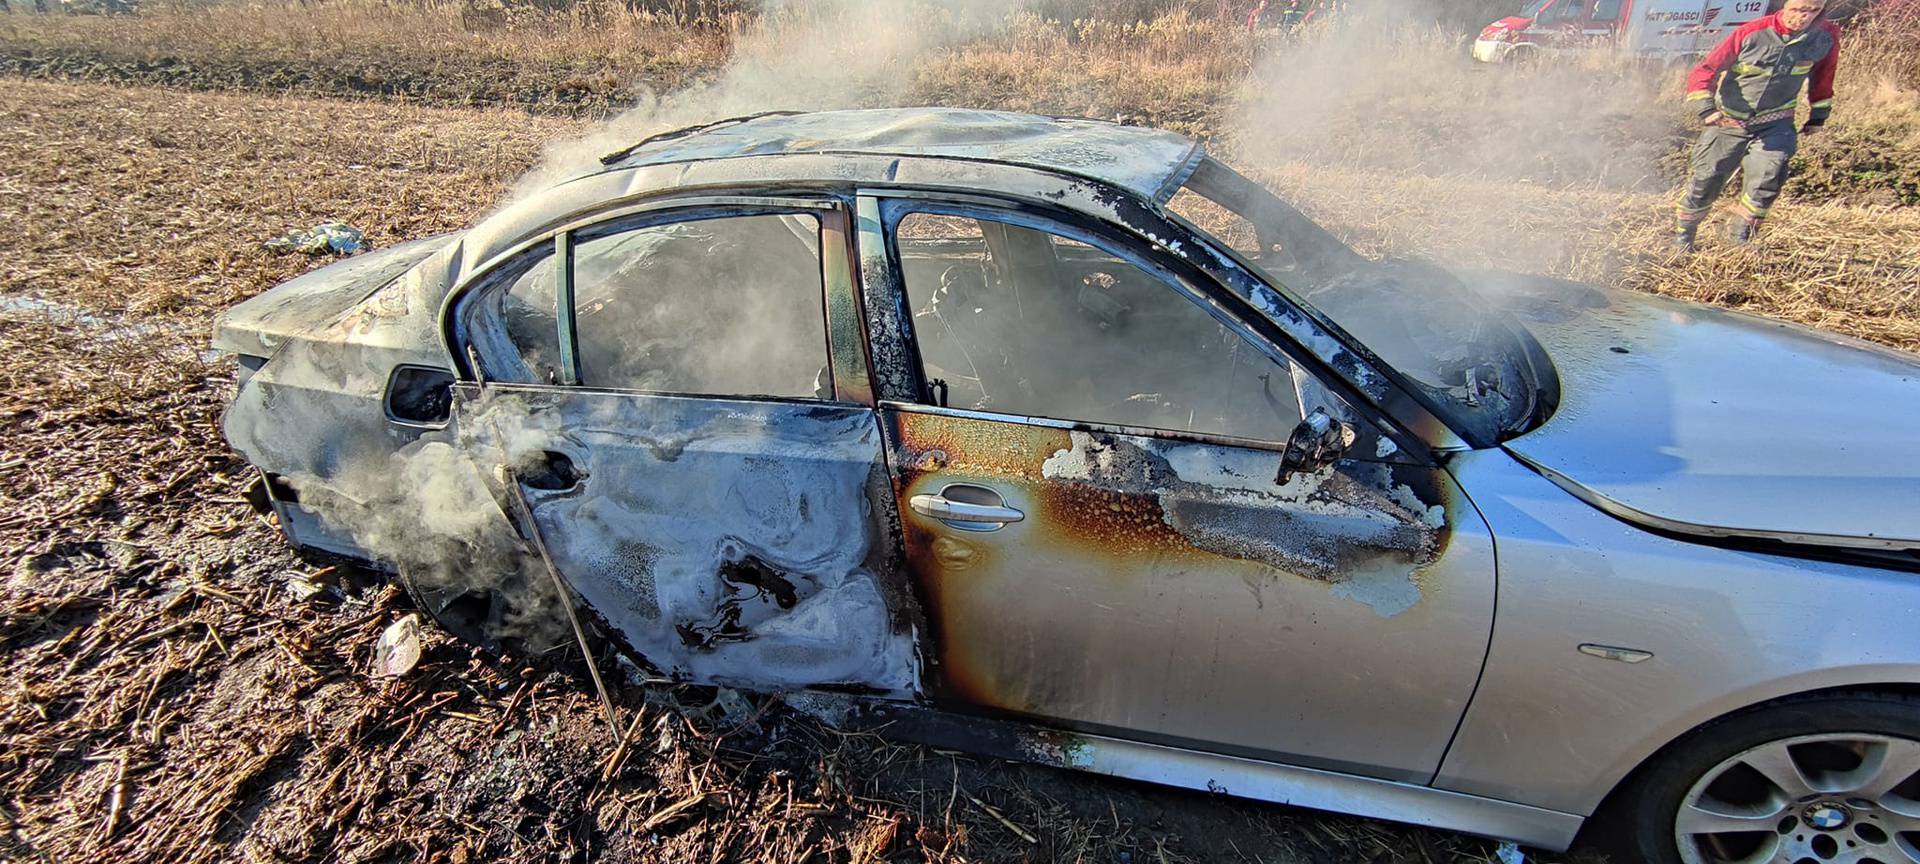 Zapalio svoj BMW, odvezao ga u blatno polje i pustio da izgori...